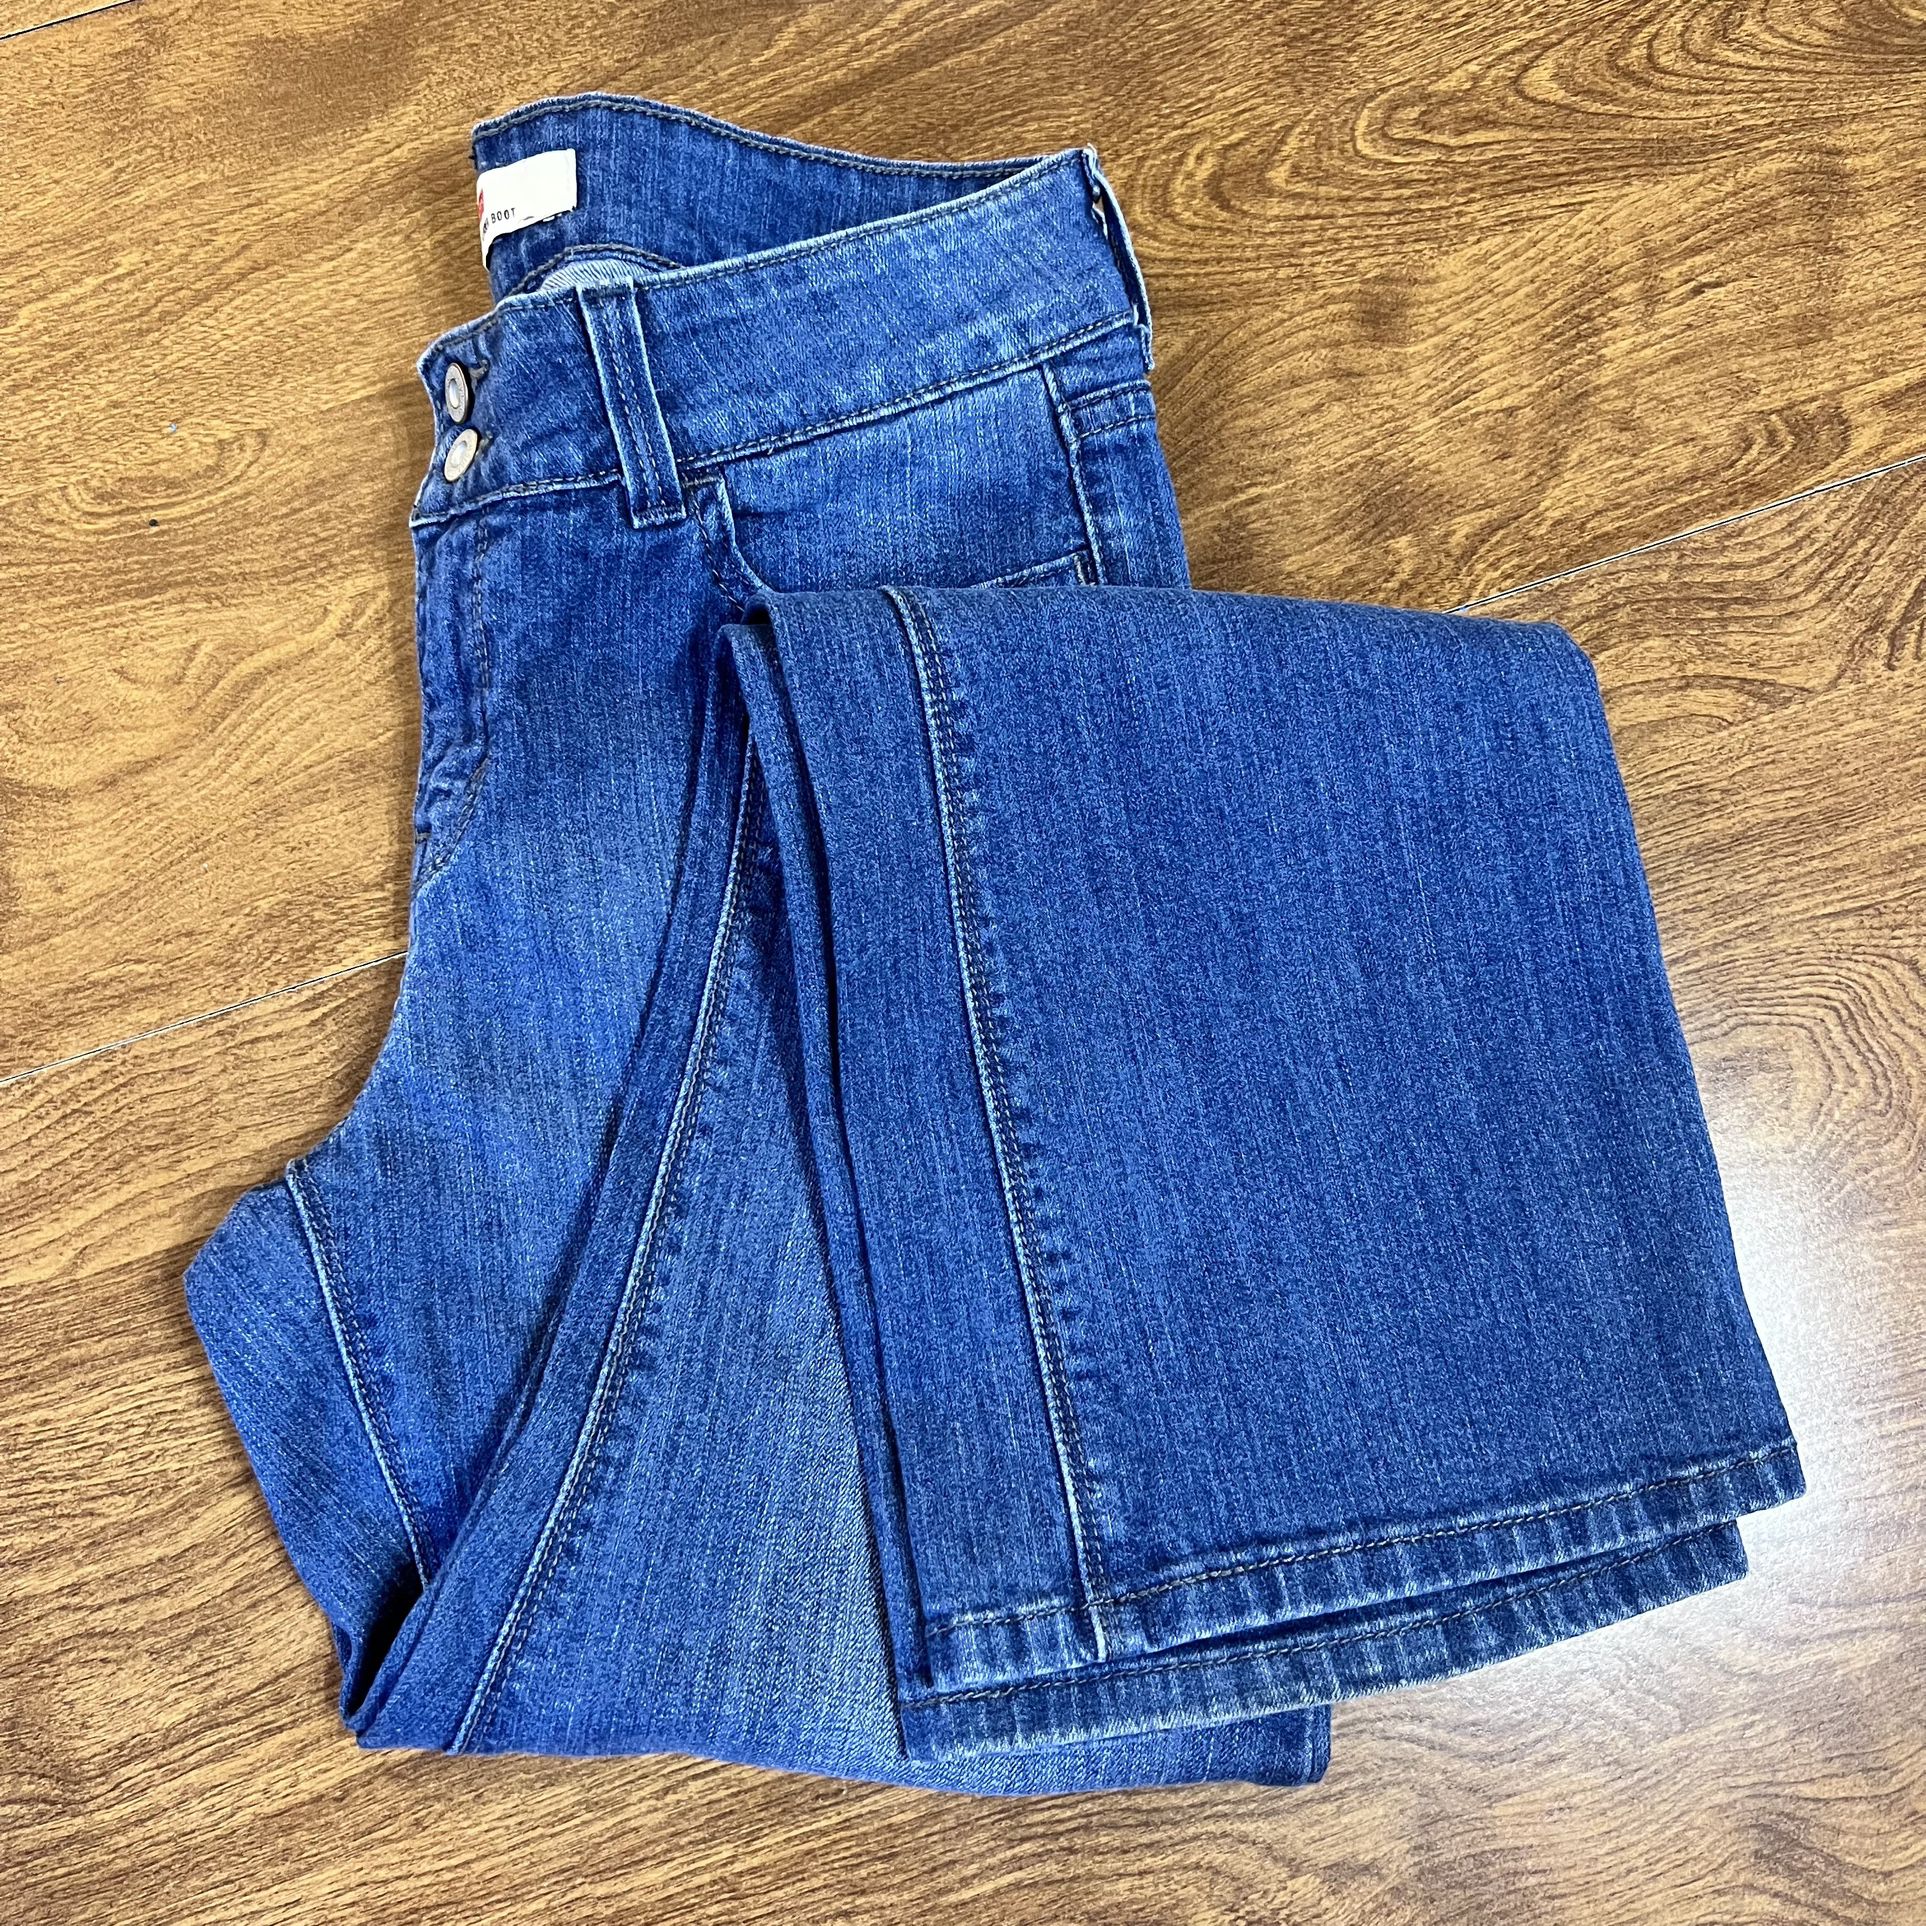 Levi’s 526 Slender Med. Wash blue Stretch Bootcut Denim Jeans size 6